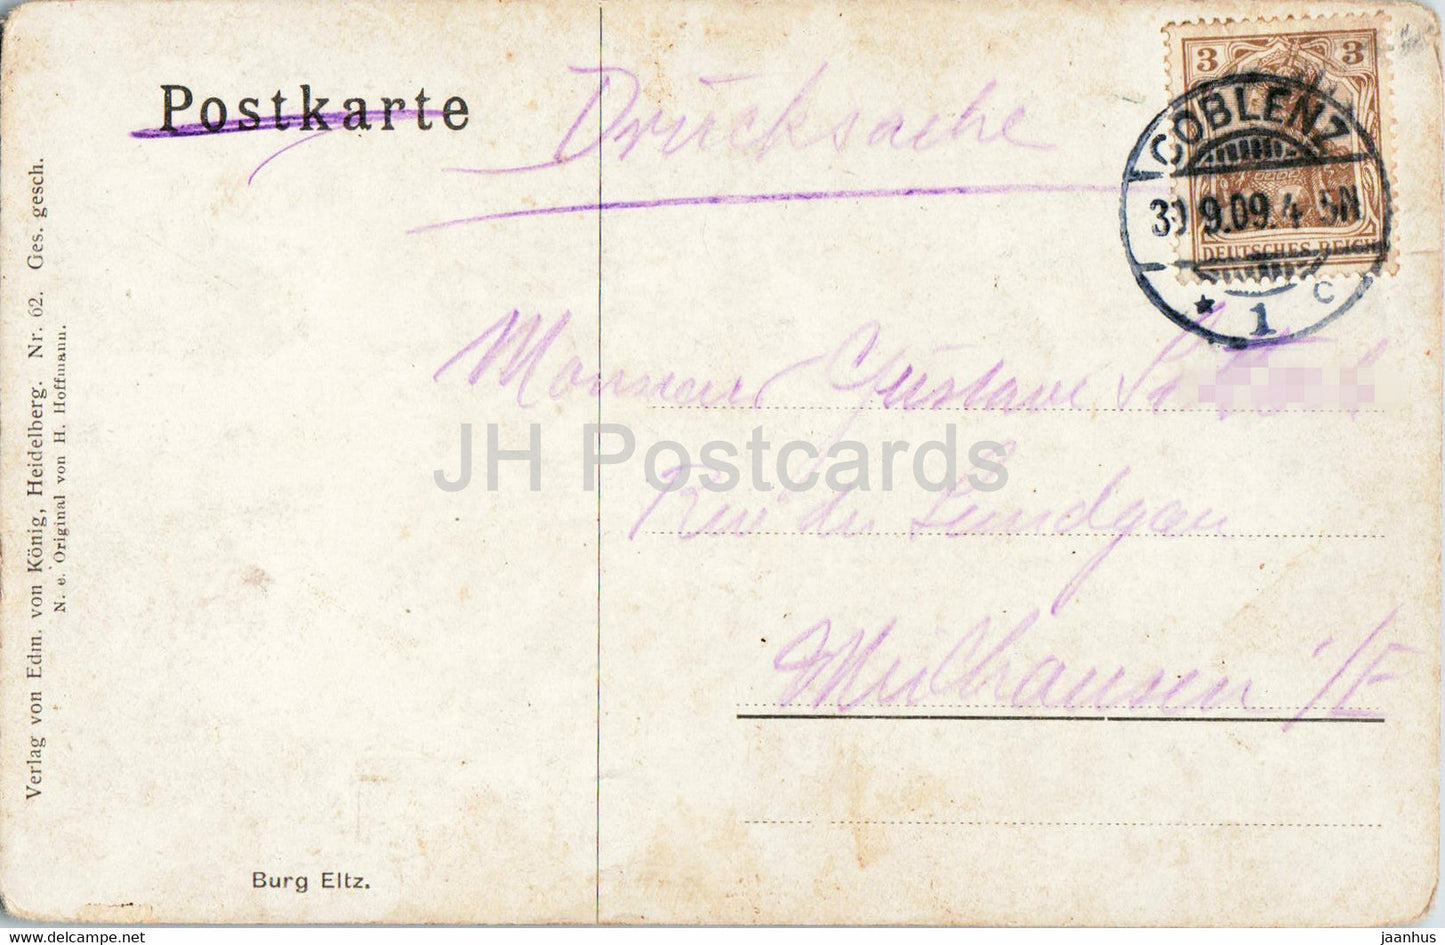 Burg Eltz - Burg - Illustration - 62 - alte Postkarte - 1909 - Deutschland - gebraucht